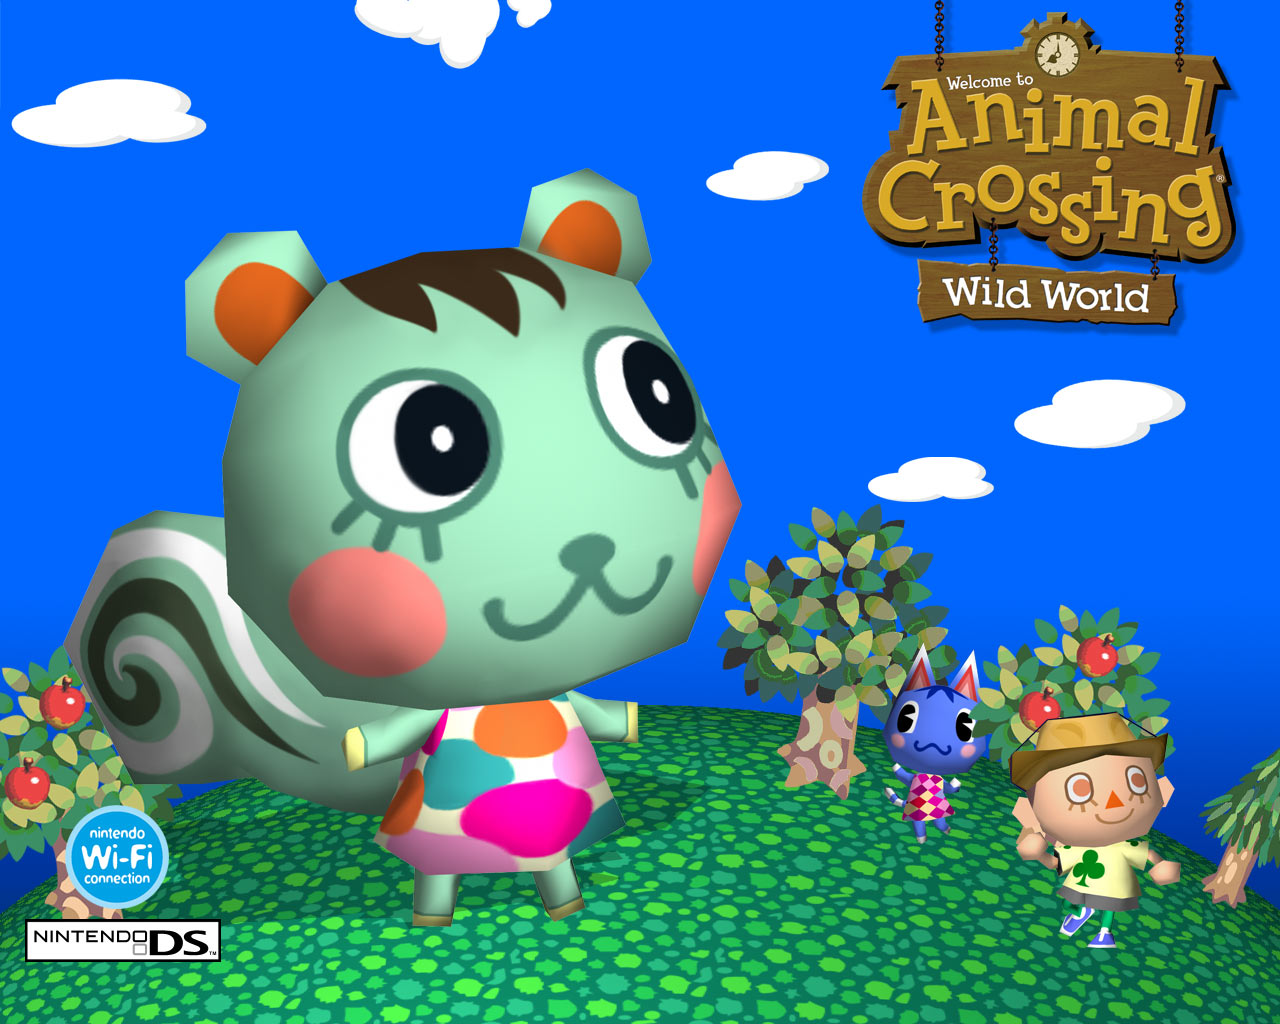 Tema: Todo sobre el Animal Crossing Wild World